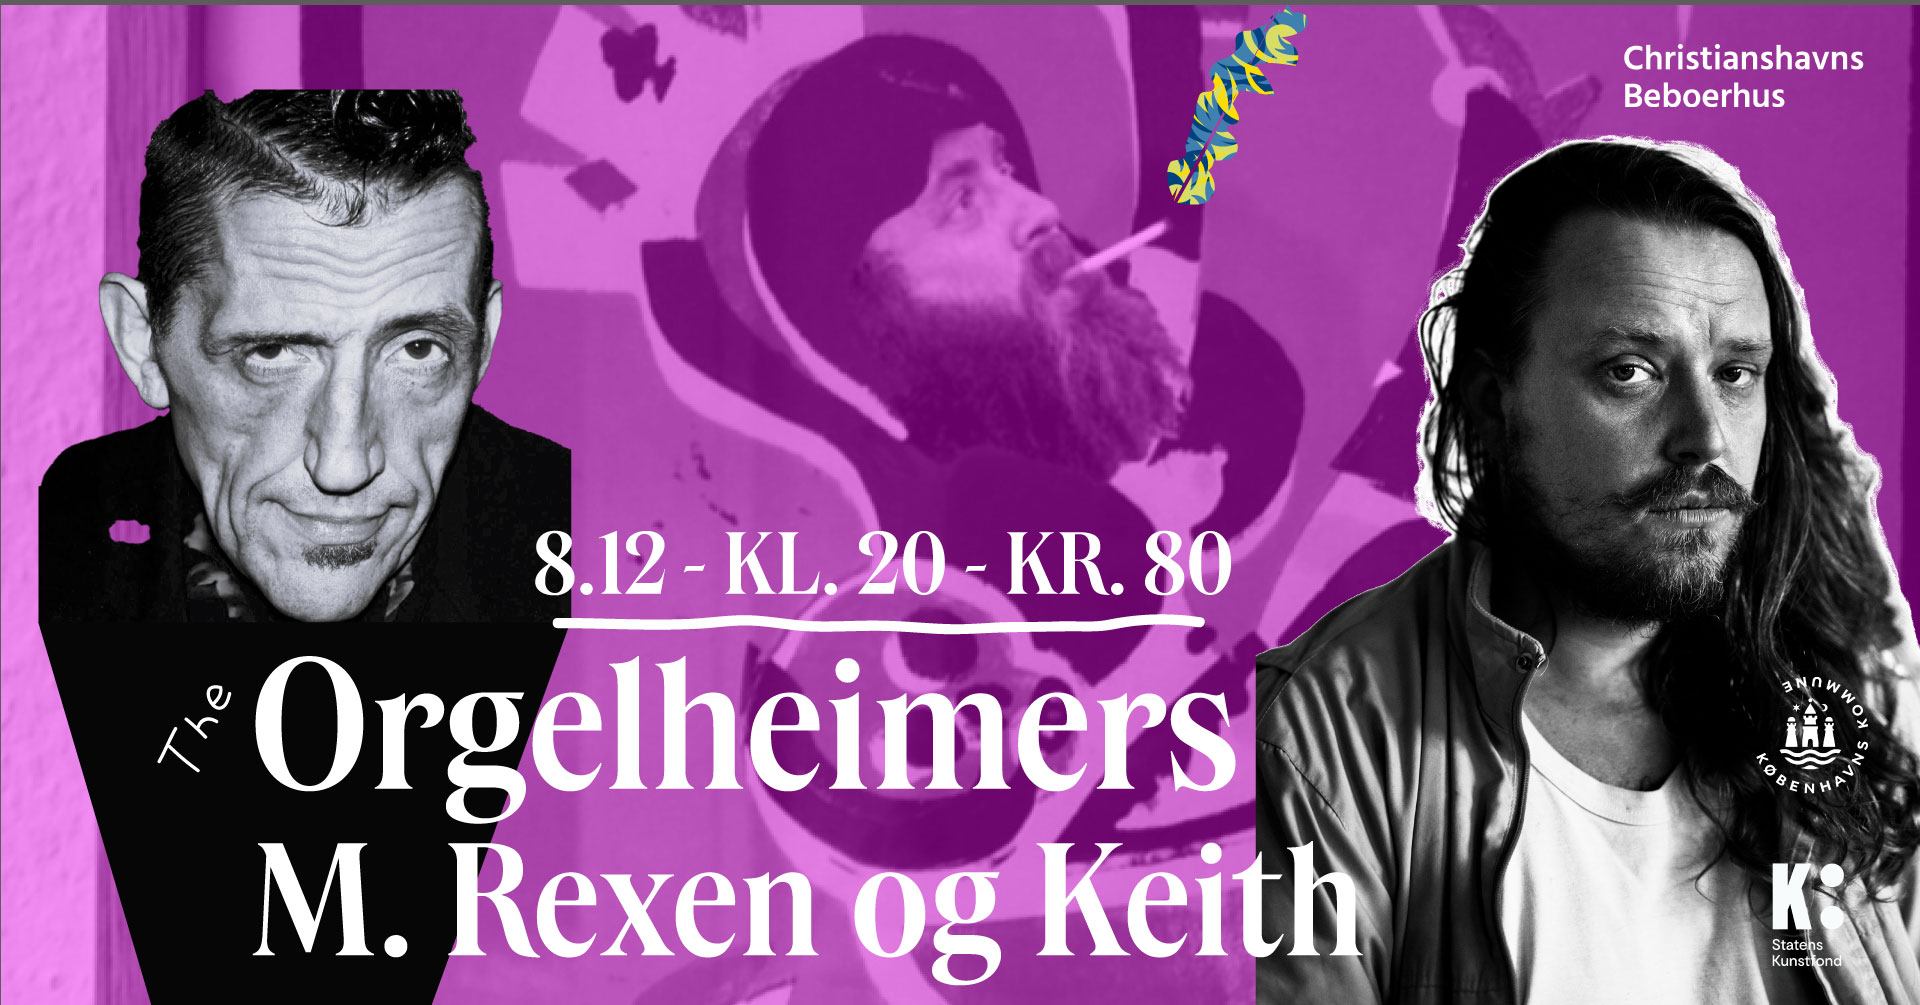 Orgelheimers / M. REXEN og Keith